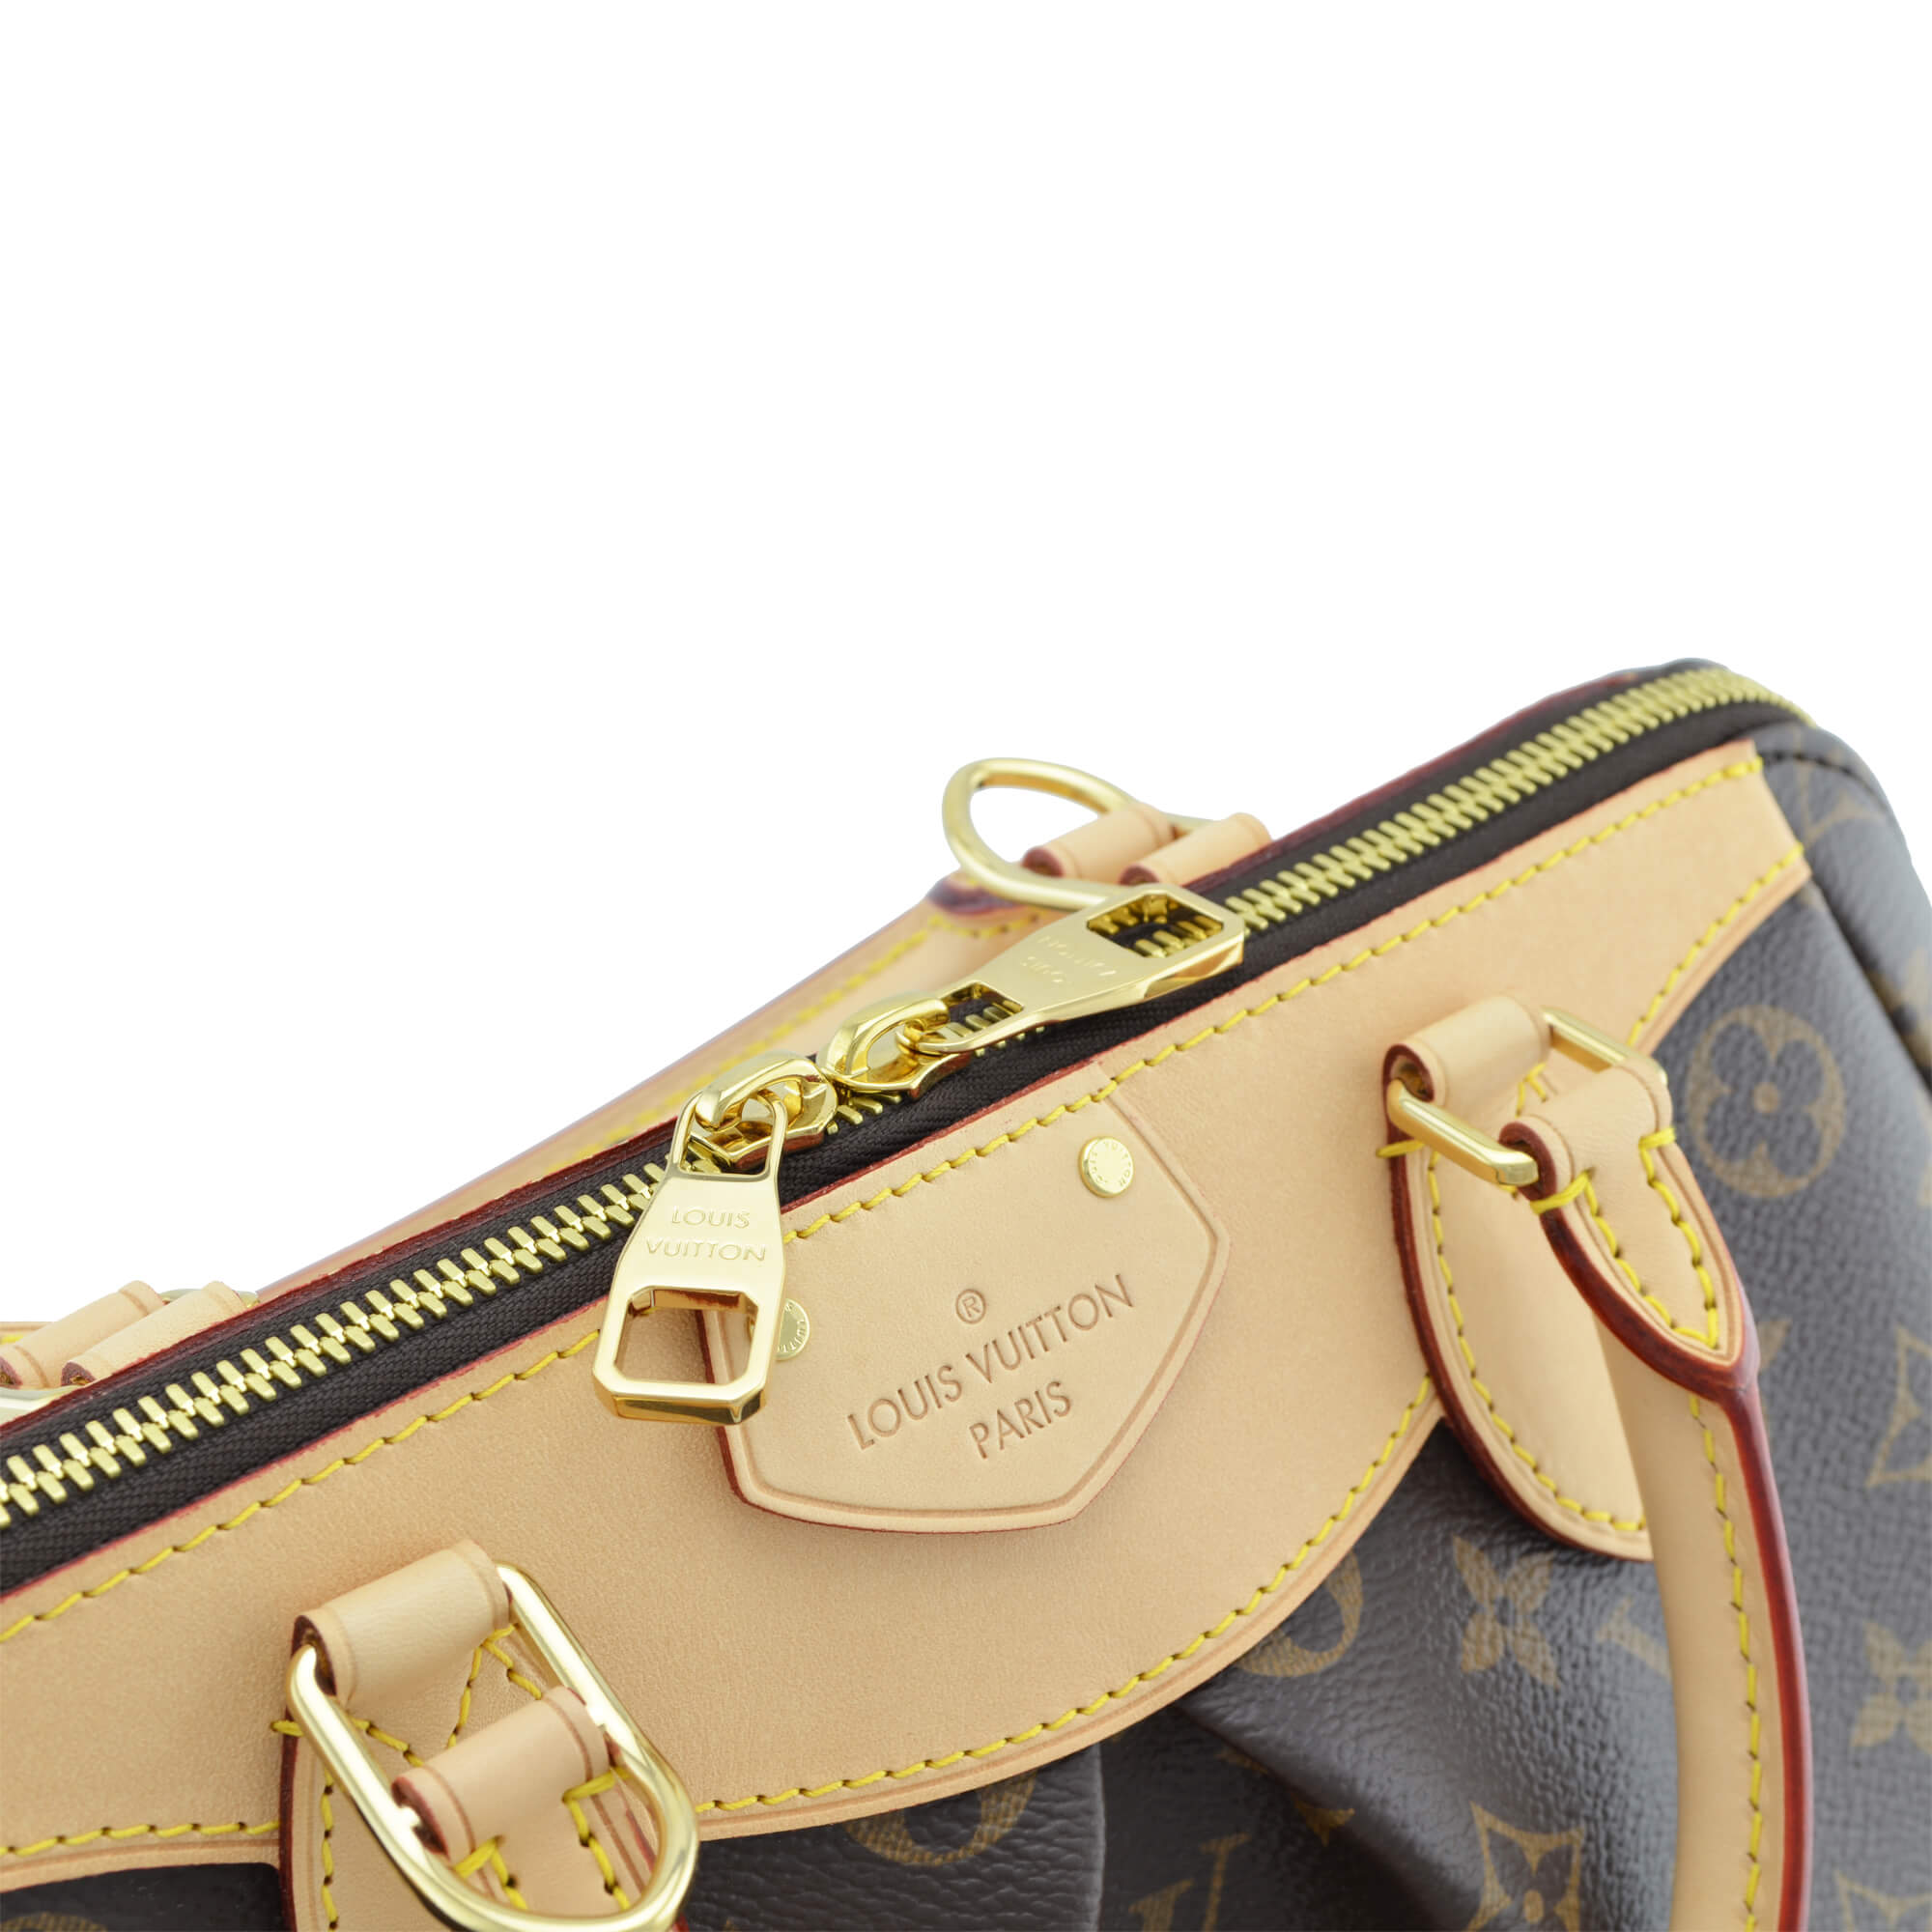 Louis Vuitton Taschen günstig kaufen, Second Hand